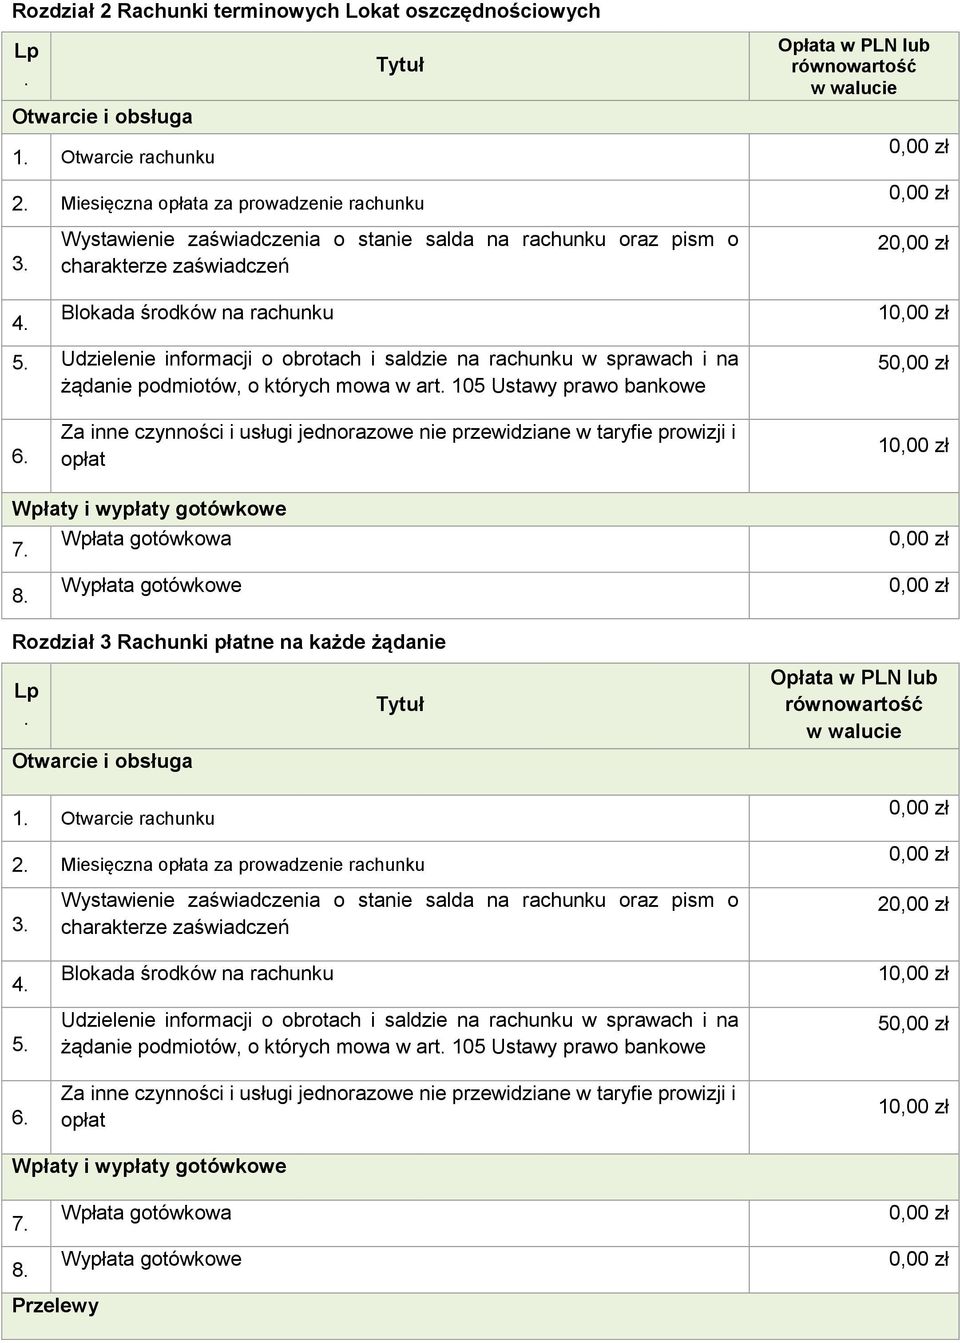 na 5 1 Rozdział 3 Rachunki płatne na każde żądanie Opłata w PLN lub równowartość w walucie 2 Miesięczna a za prowadzenie rachunku 4 5